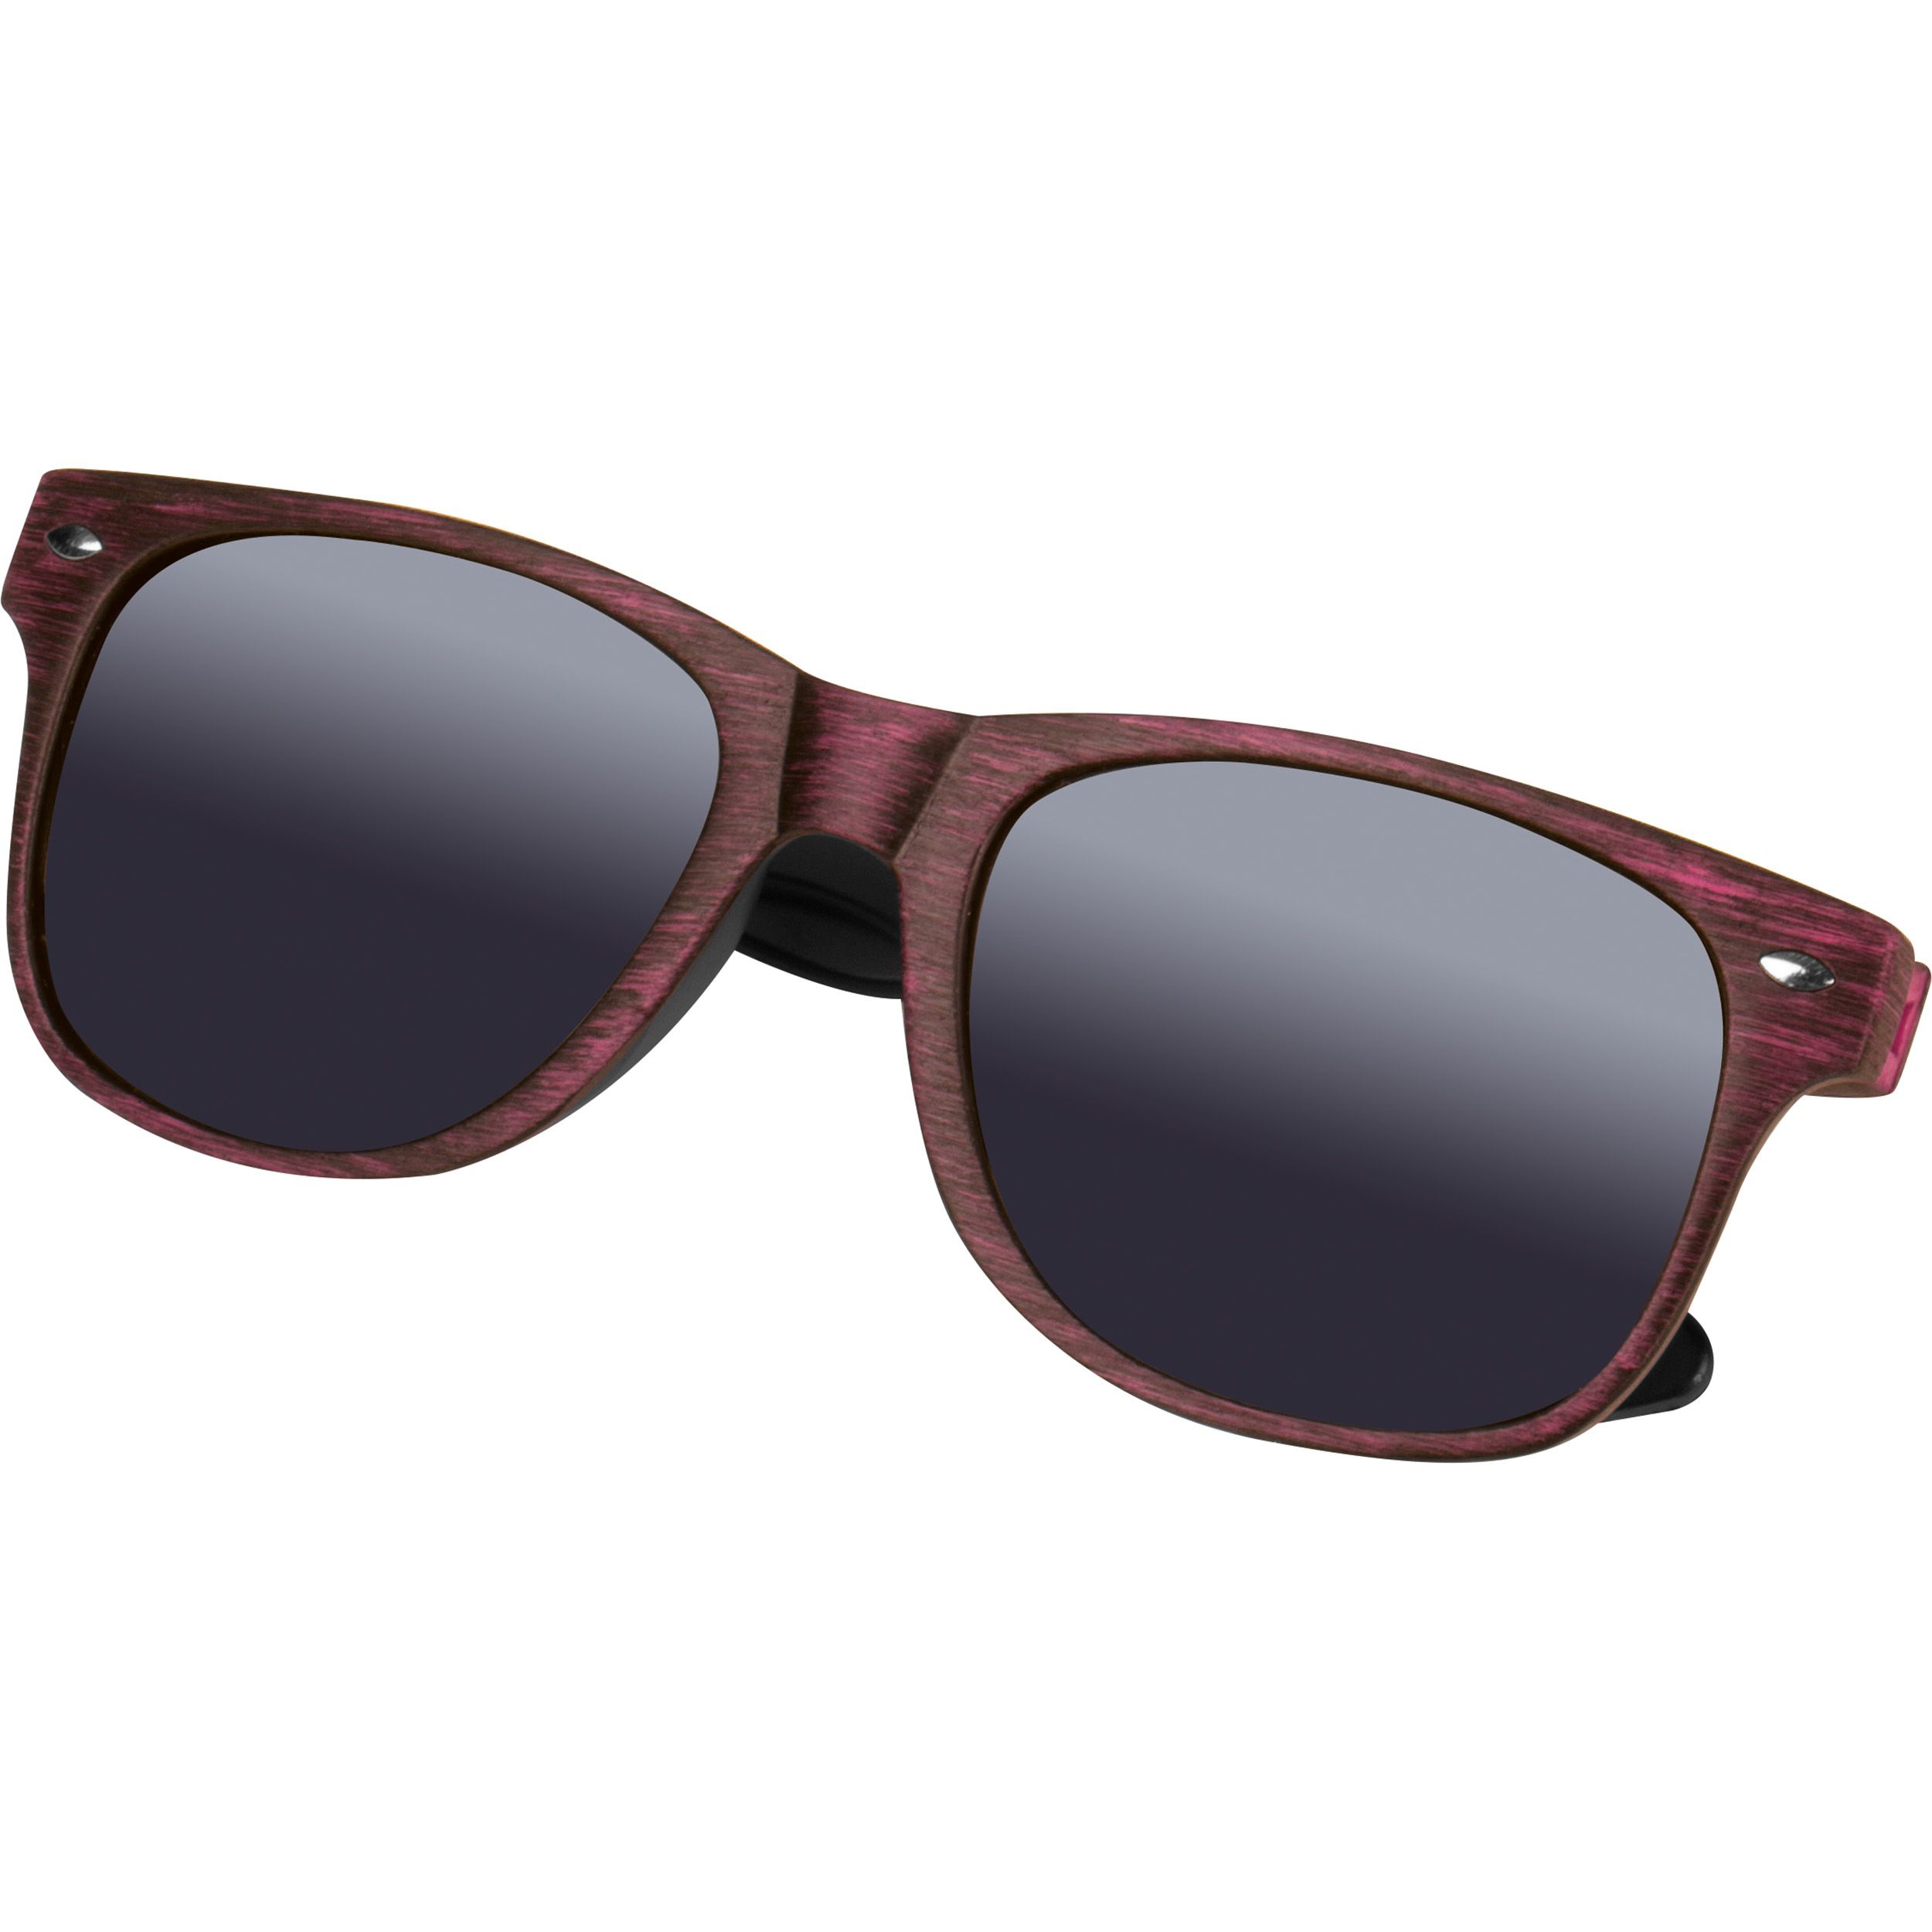 Sonnenbrille mit UV 400 Schutz, rot